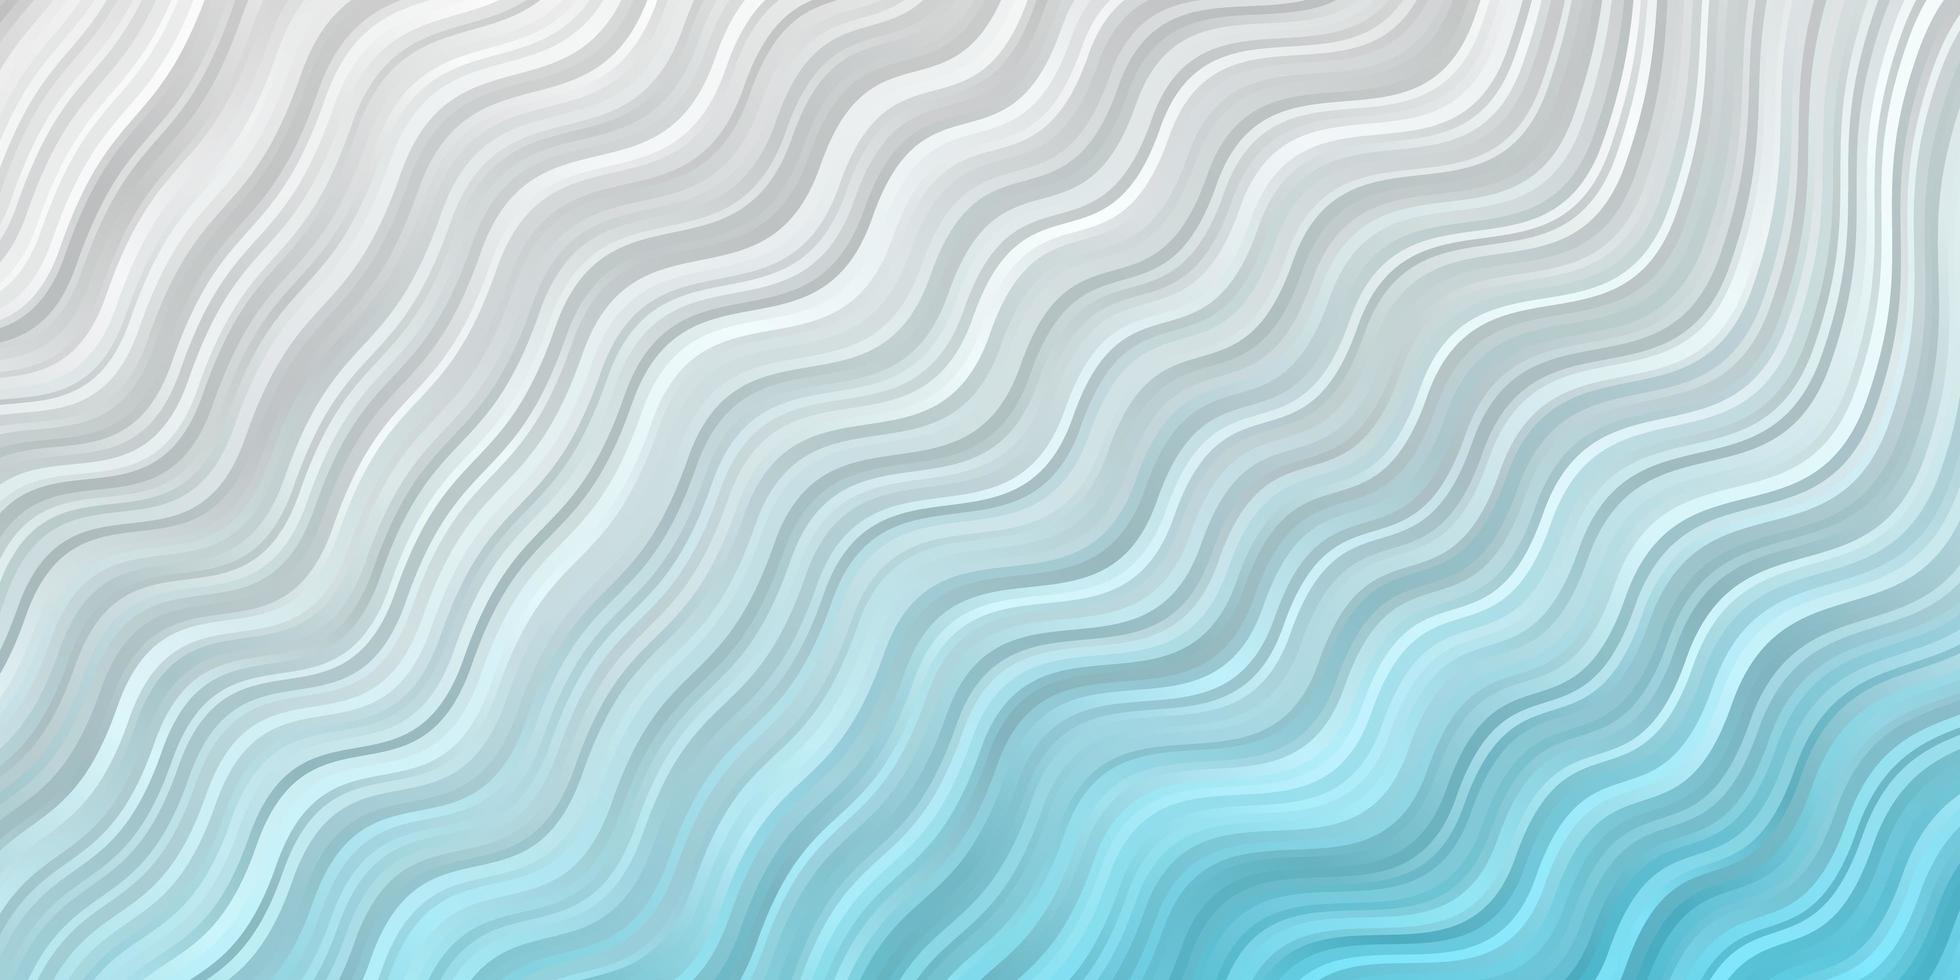 Fondo de vector azul claro con líneas curvas. colorida ilustración abstracta con curvas de degradado. plantilla para teléfonos móviles.